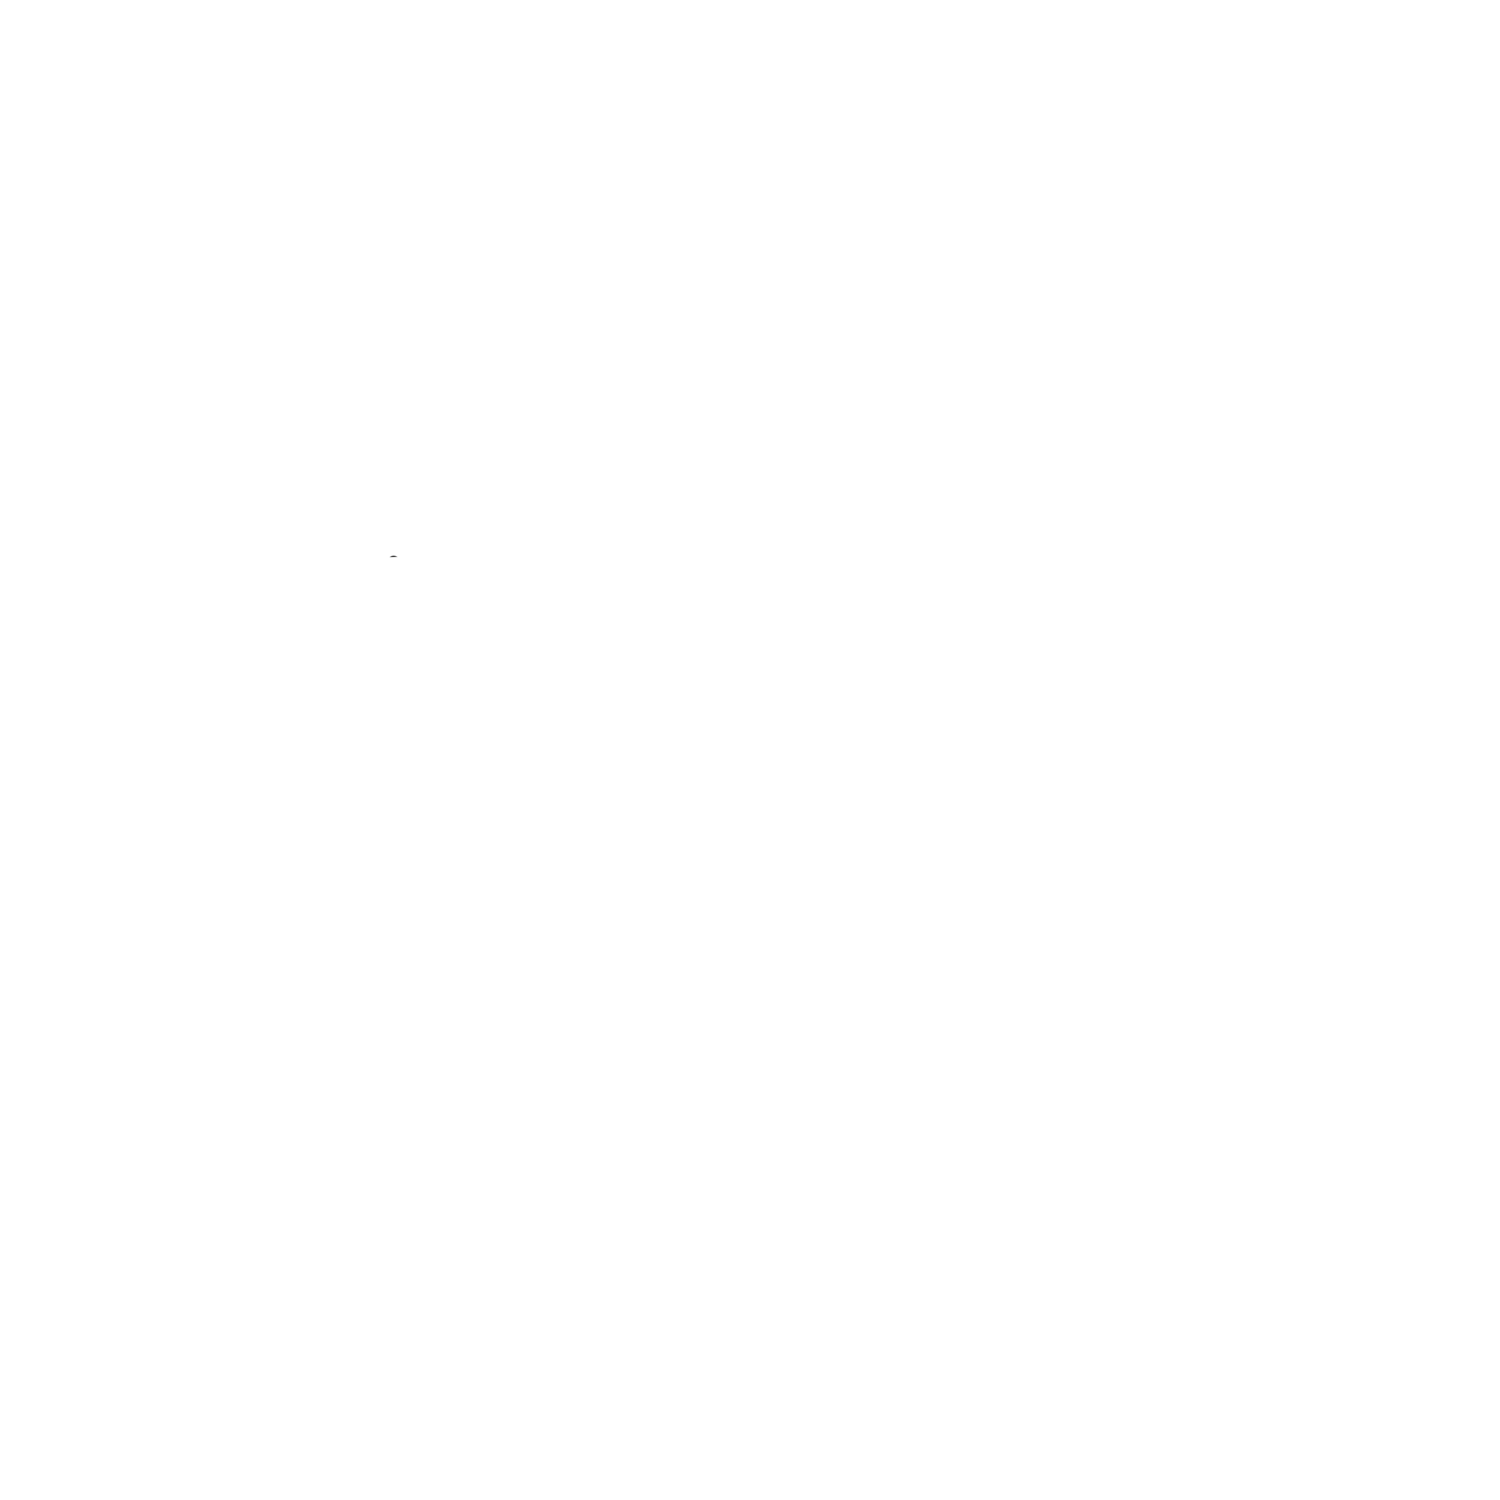 Suede Radio